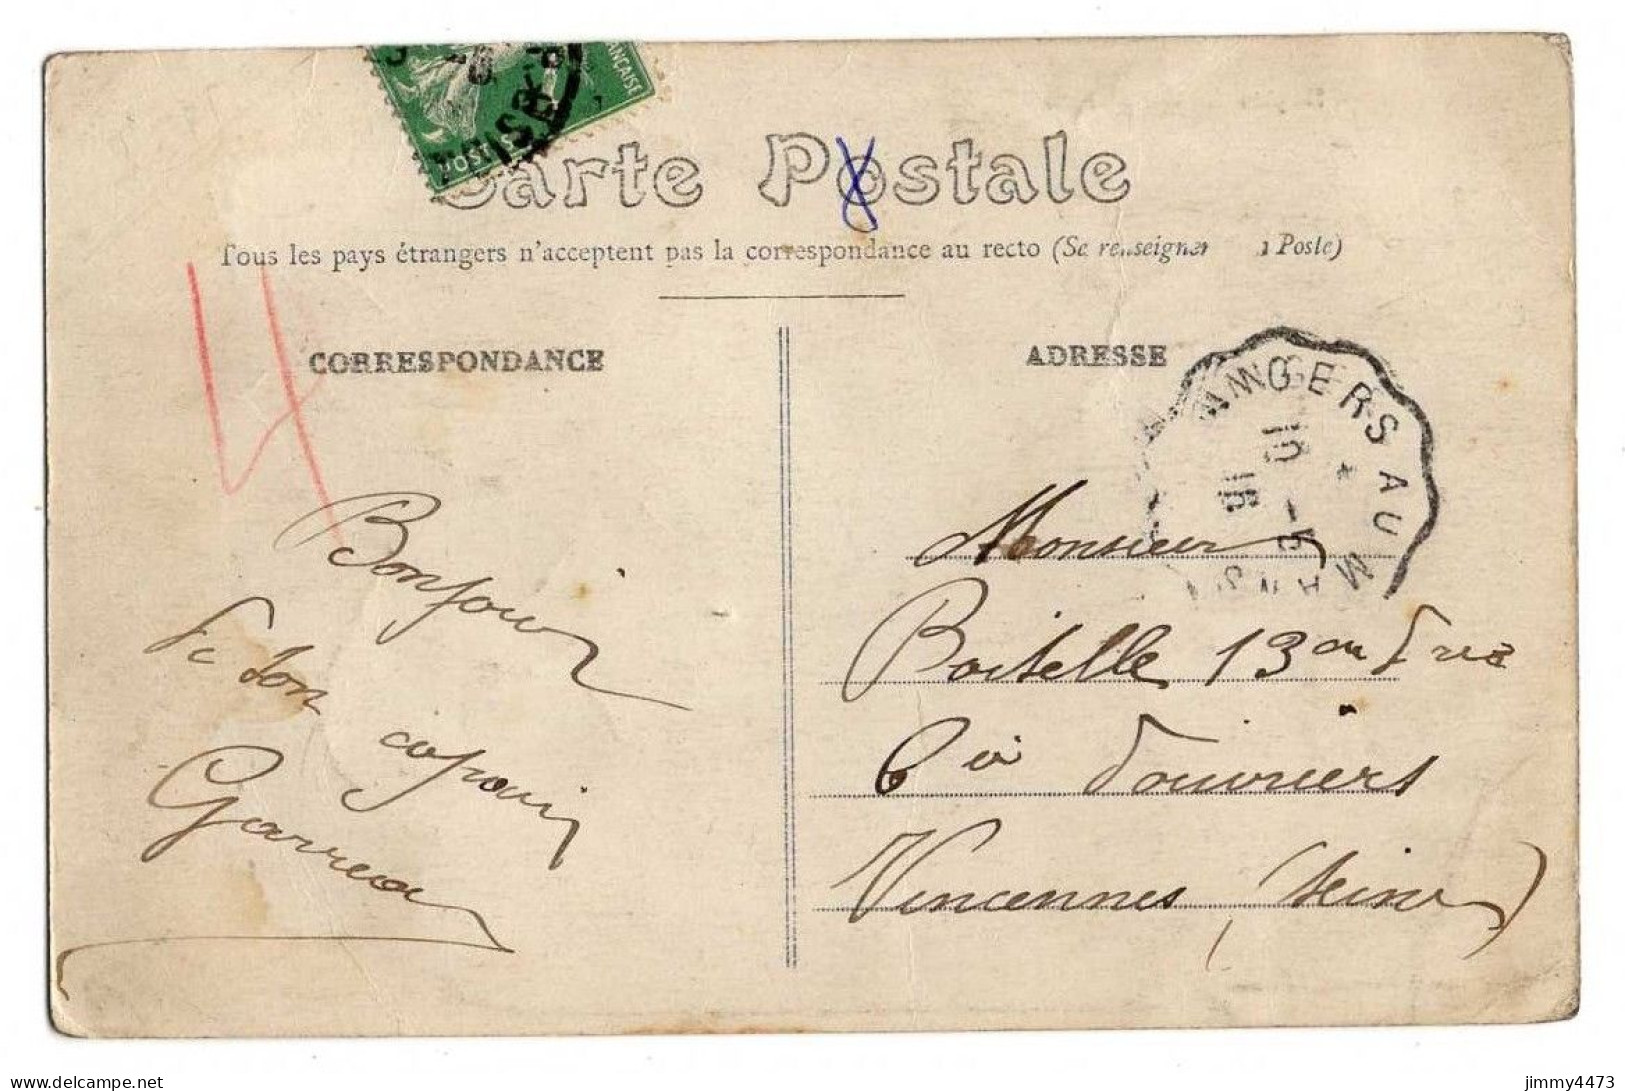 CPA - NOYEN En 1916 - Vue Partielle ( Canton De Loué Sarthe ) Phot. J. Bouveret - Loue